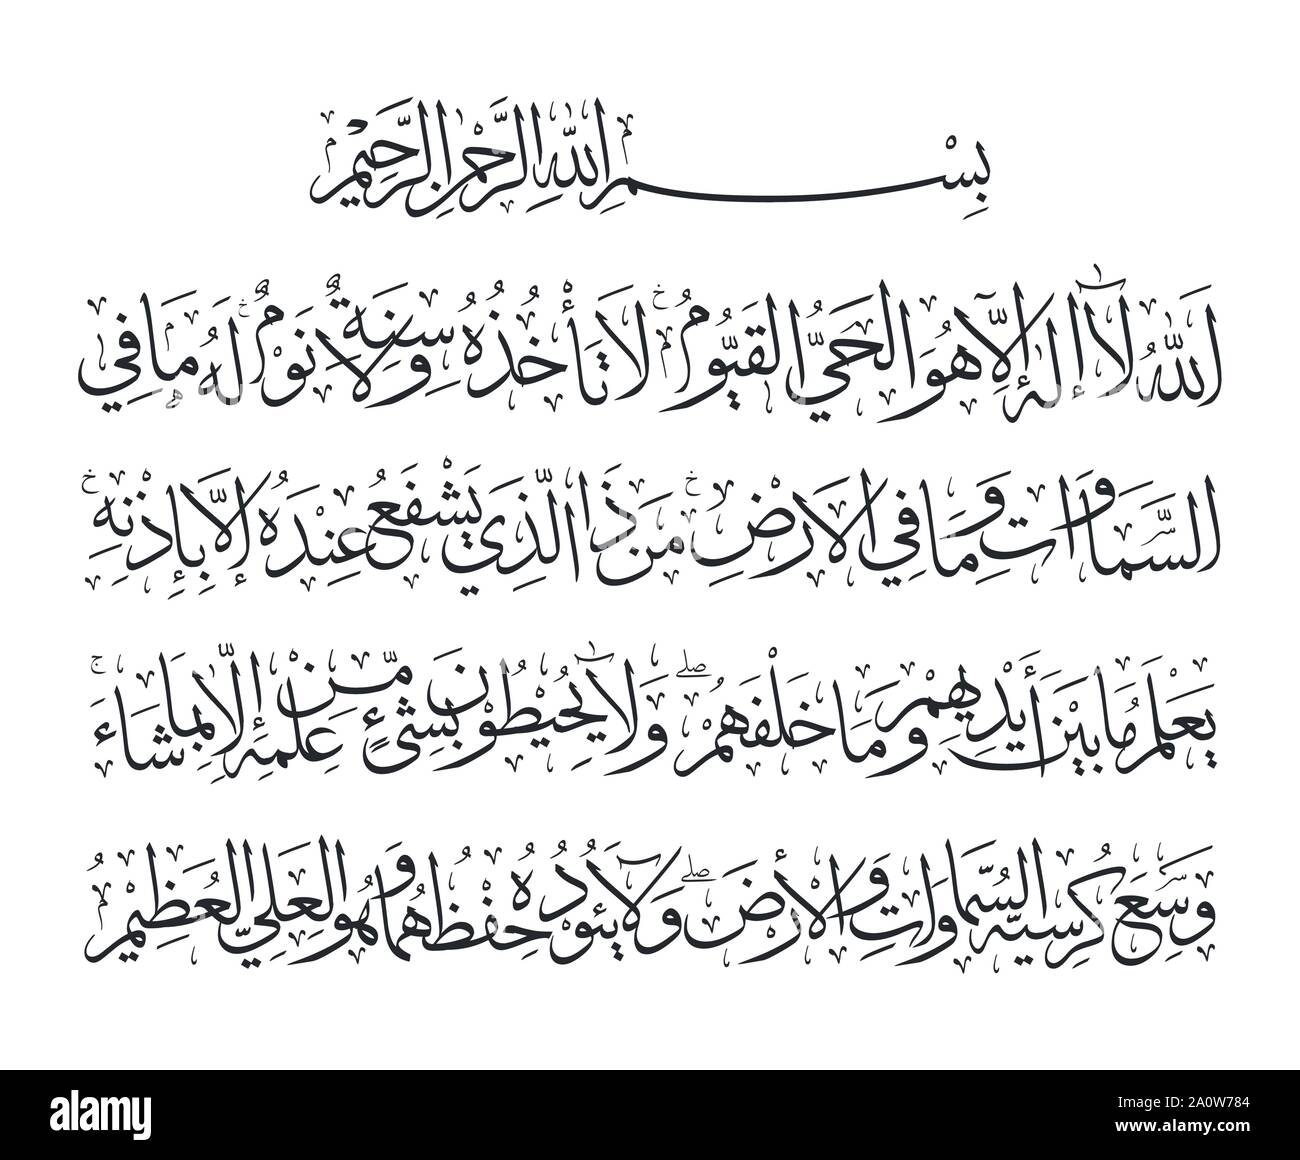 ayat al kursi arabic english